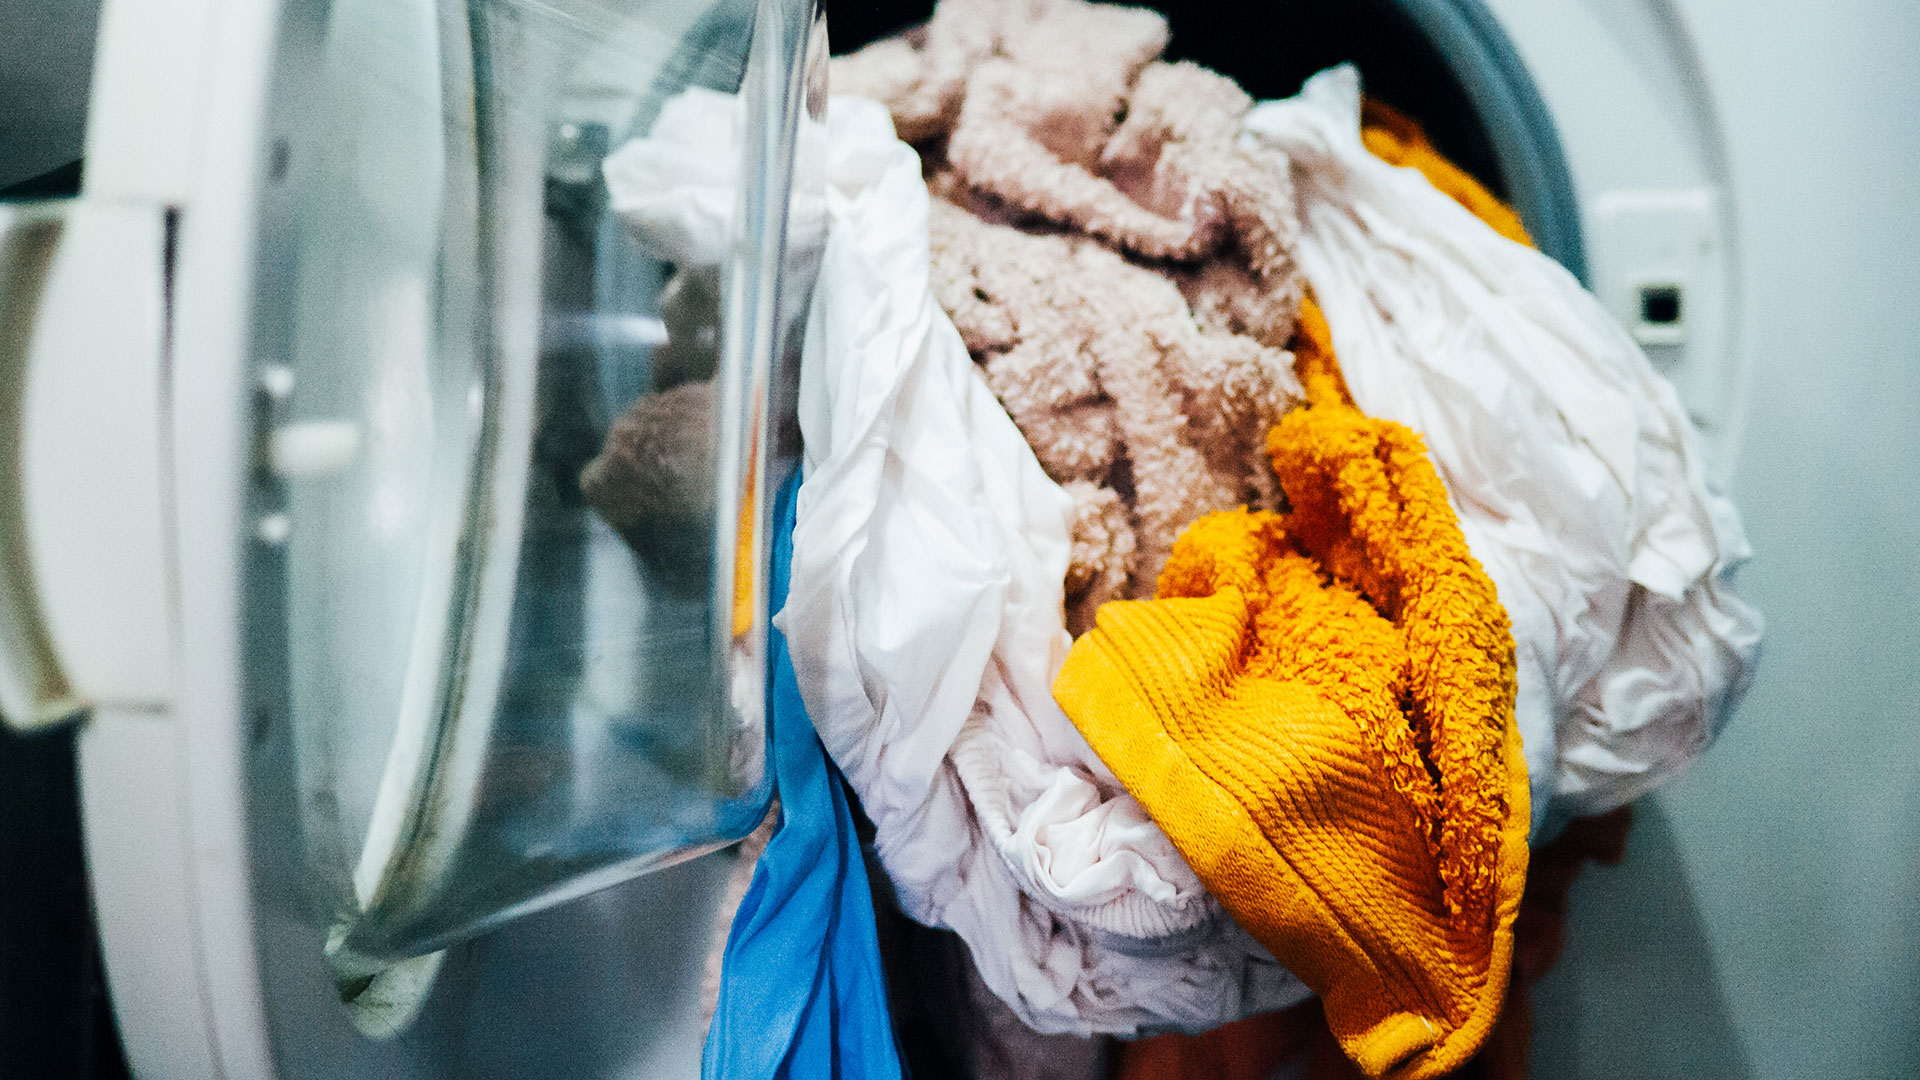 Secar una carga de ropa con una secadora que no utiliza calor, sino que simplemente gira la tela para eliminar la humedad, libera microfibras potencialmente dañinas en el aire  (Gettyimages)